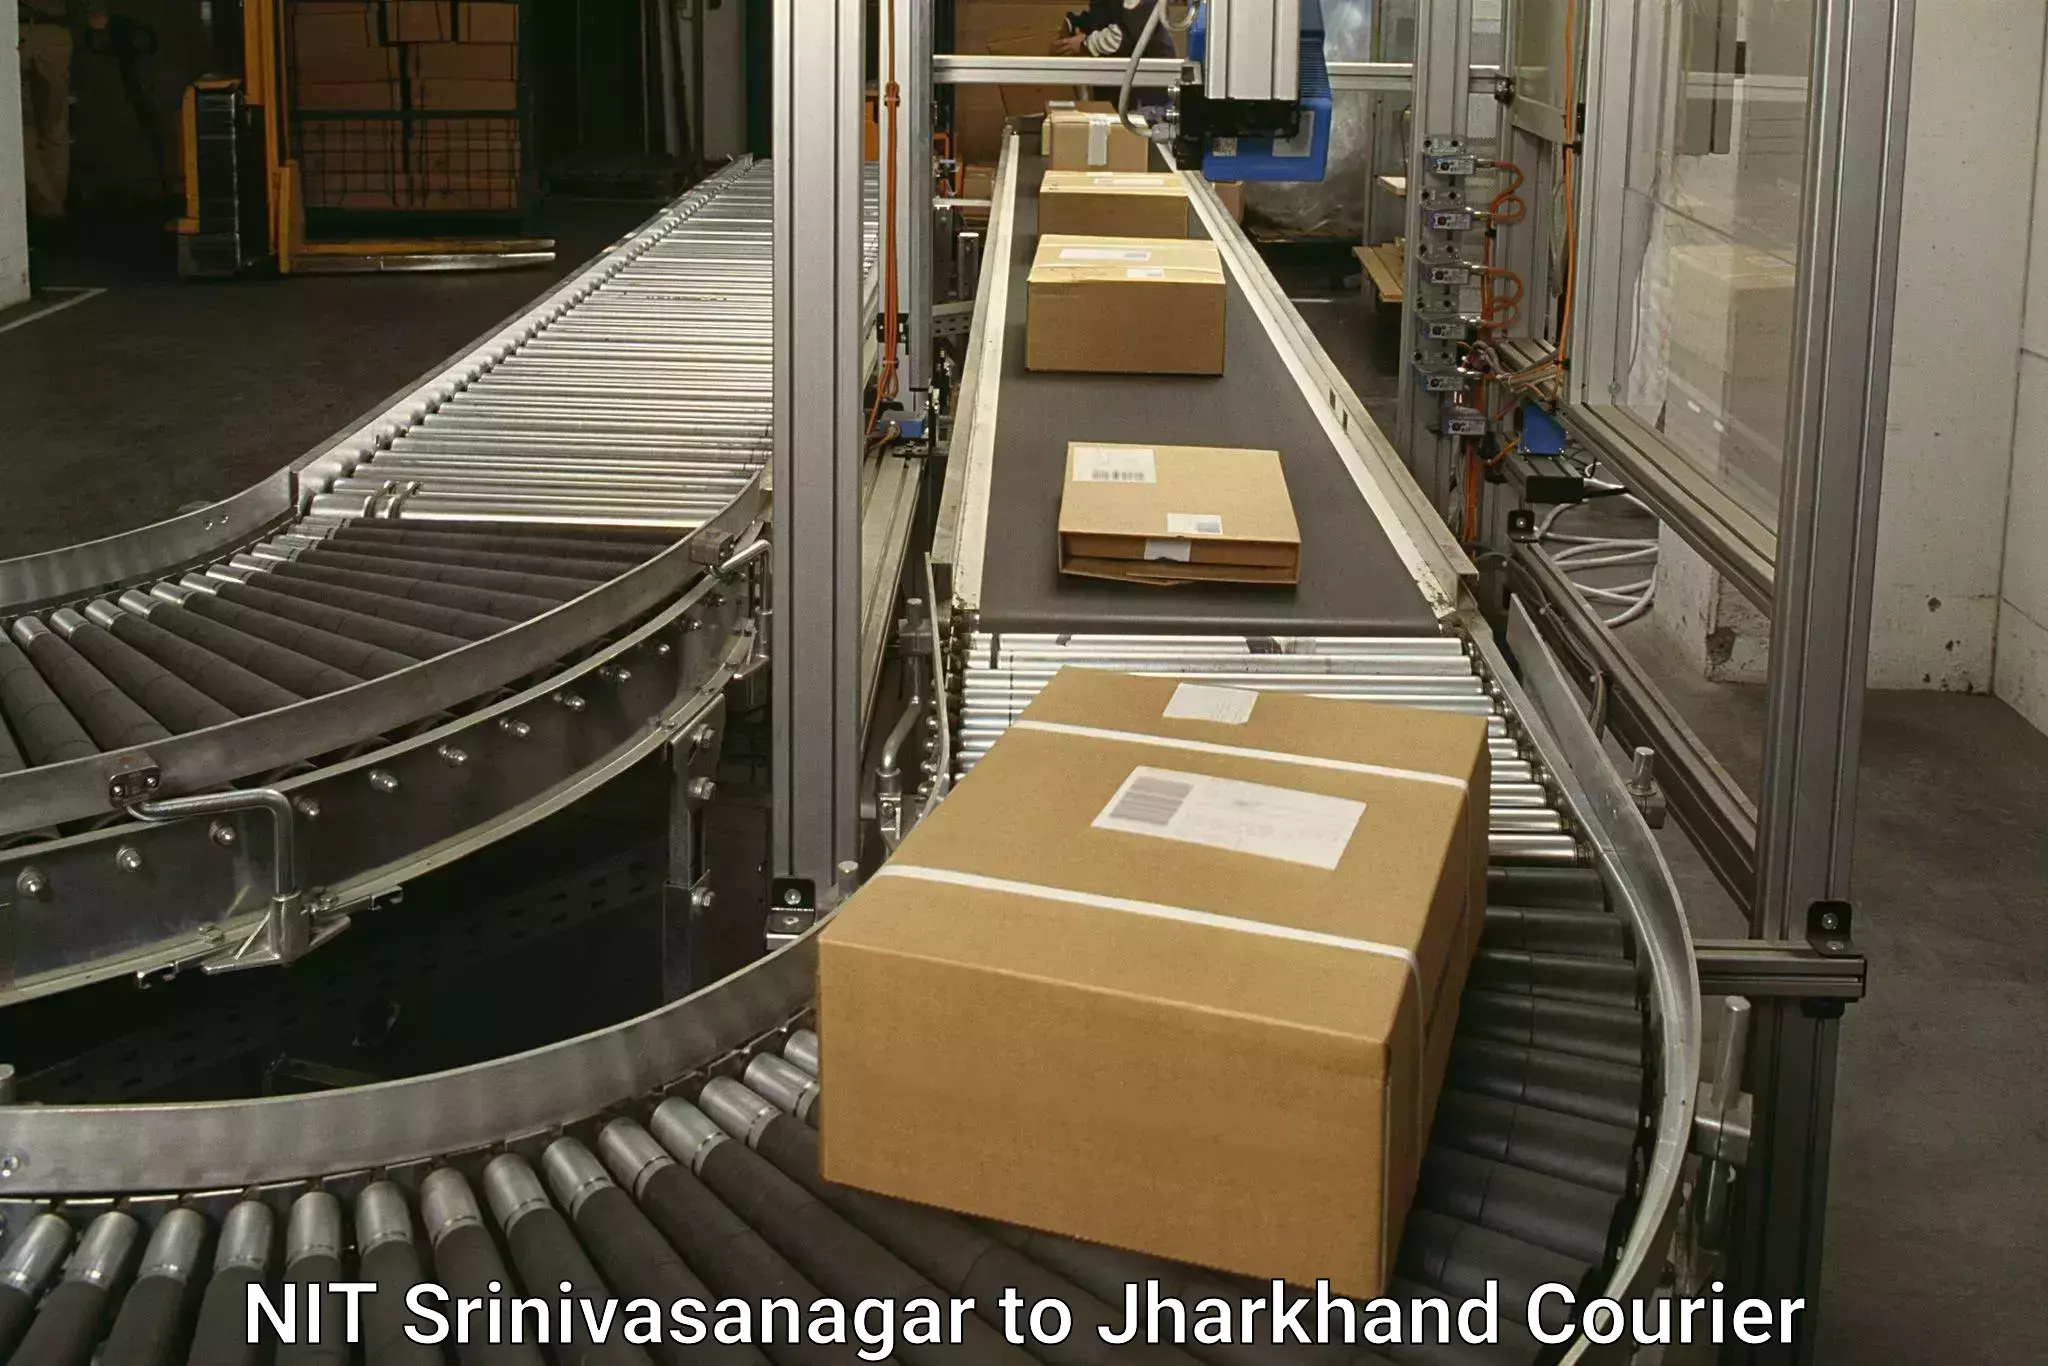 Seamless shipping service NIT Srinivasanagar to Domchanch